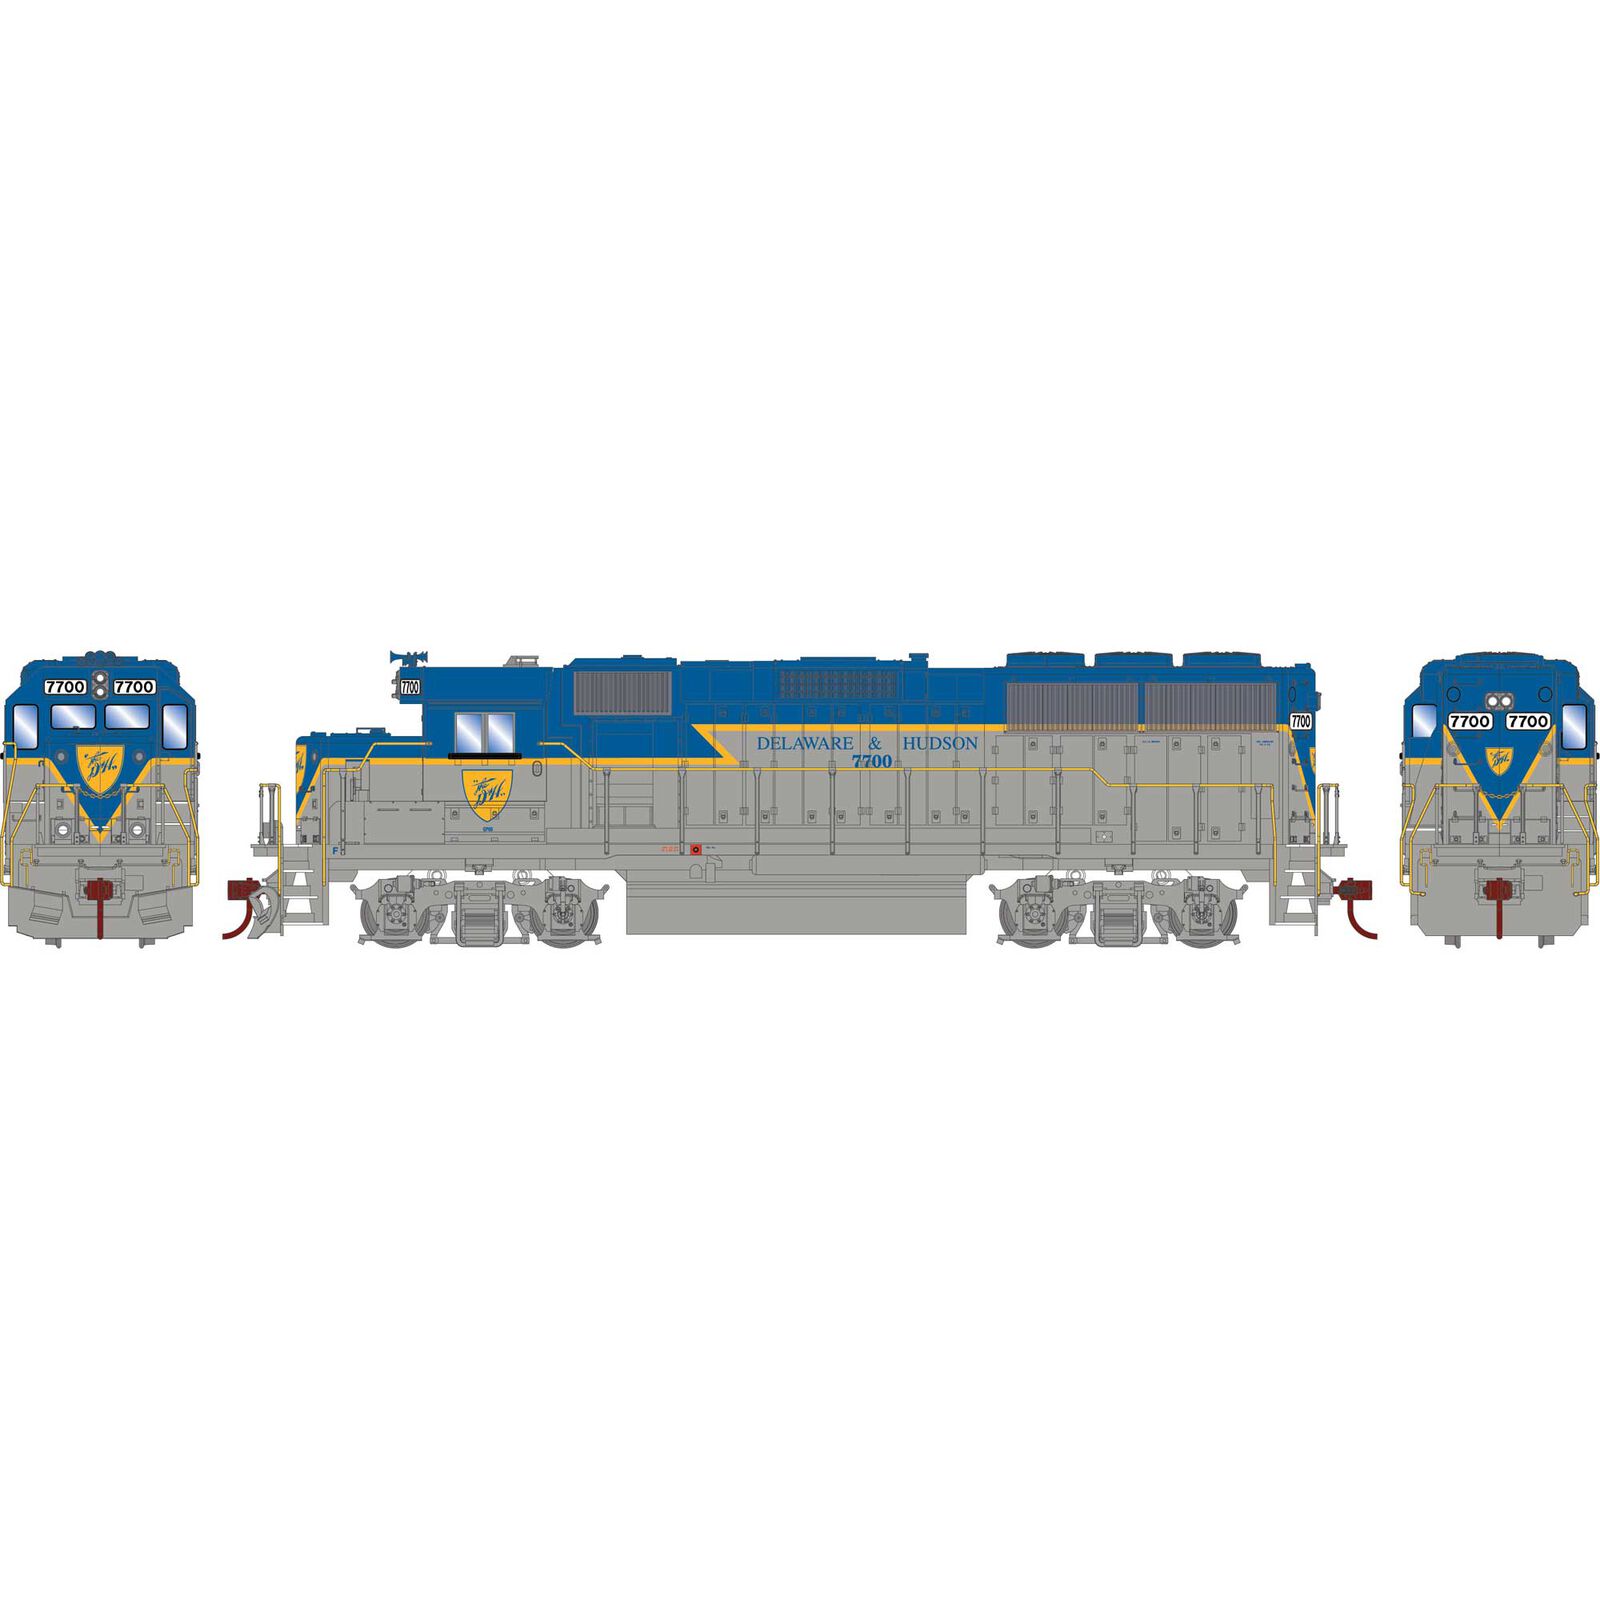 HO EMD GP60 Locomotive with Econami DCC & Sound, Legendary Liveries, DH #7700